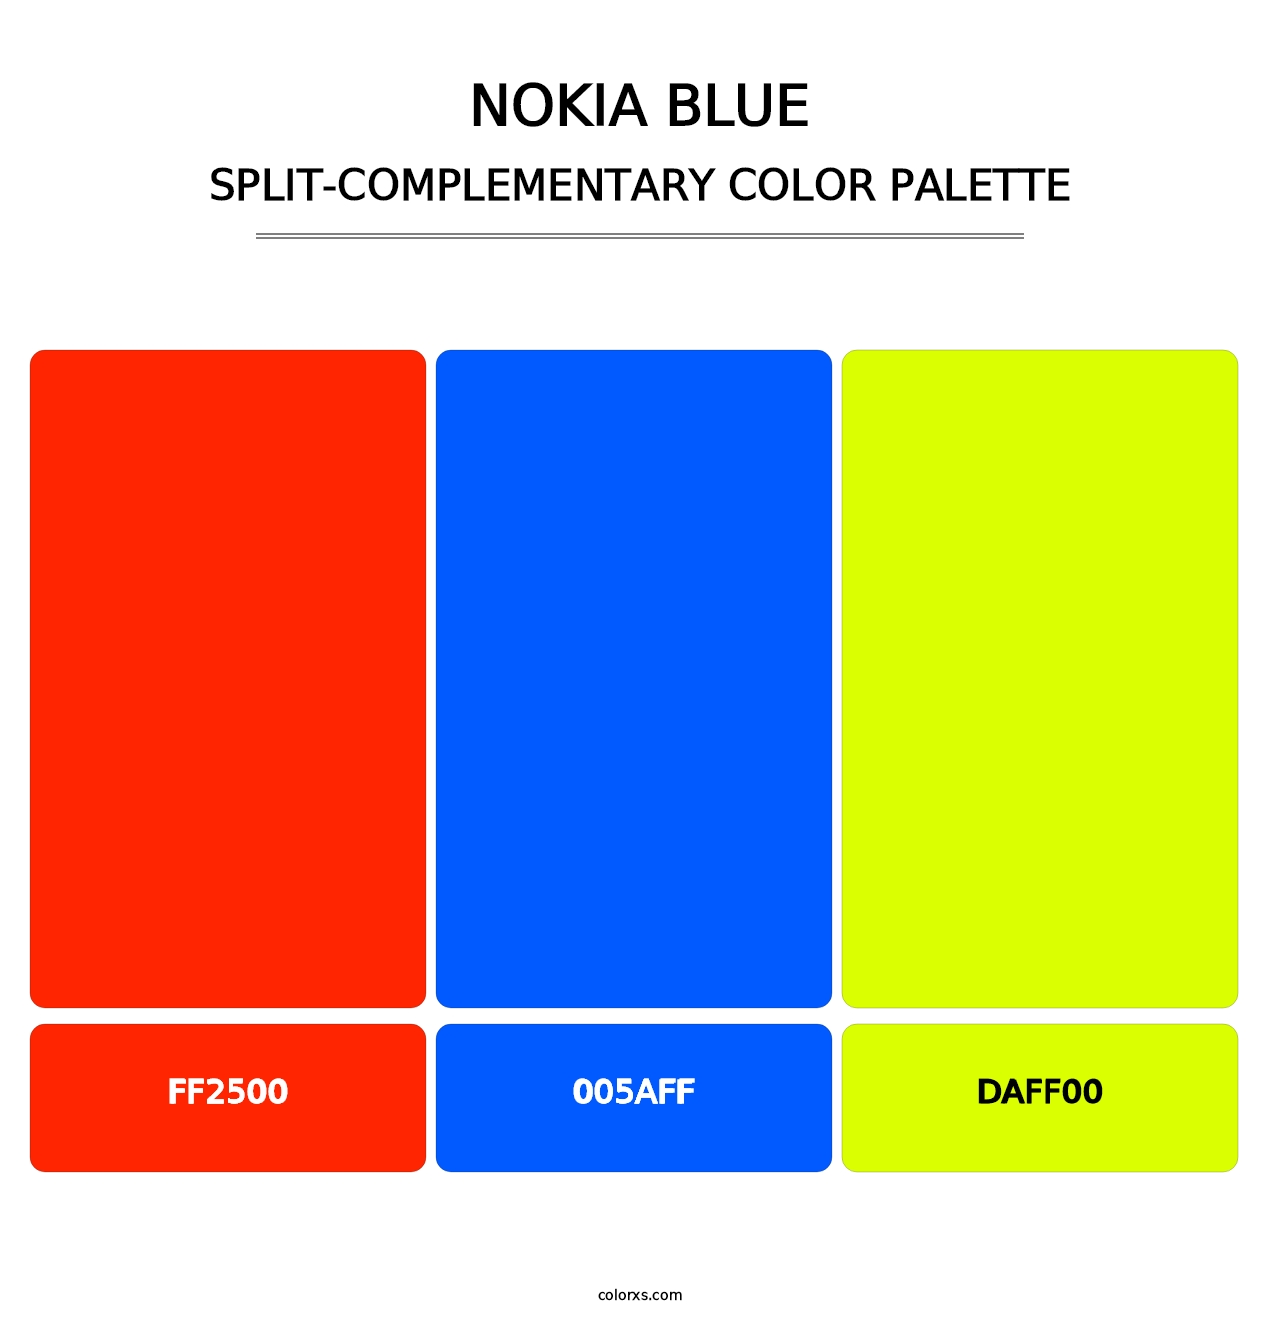 Nokia Blue - Split-Complementary Color Palette